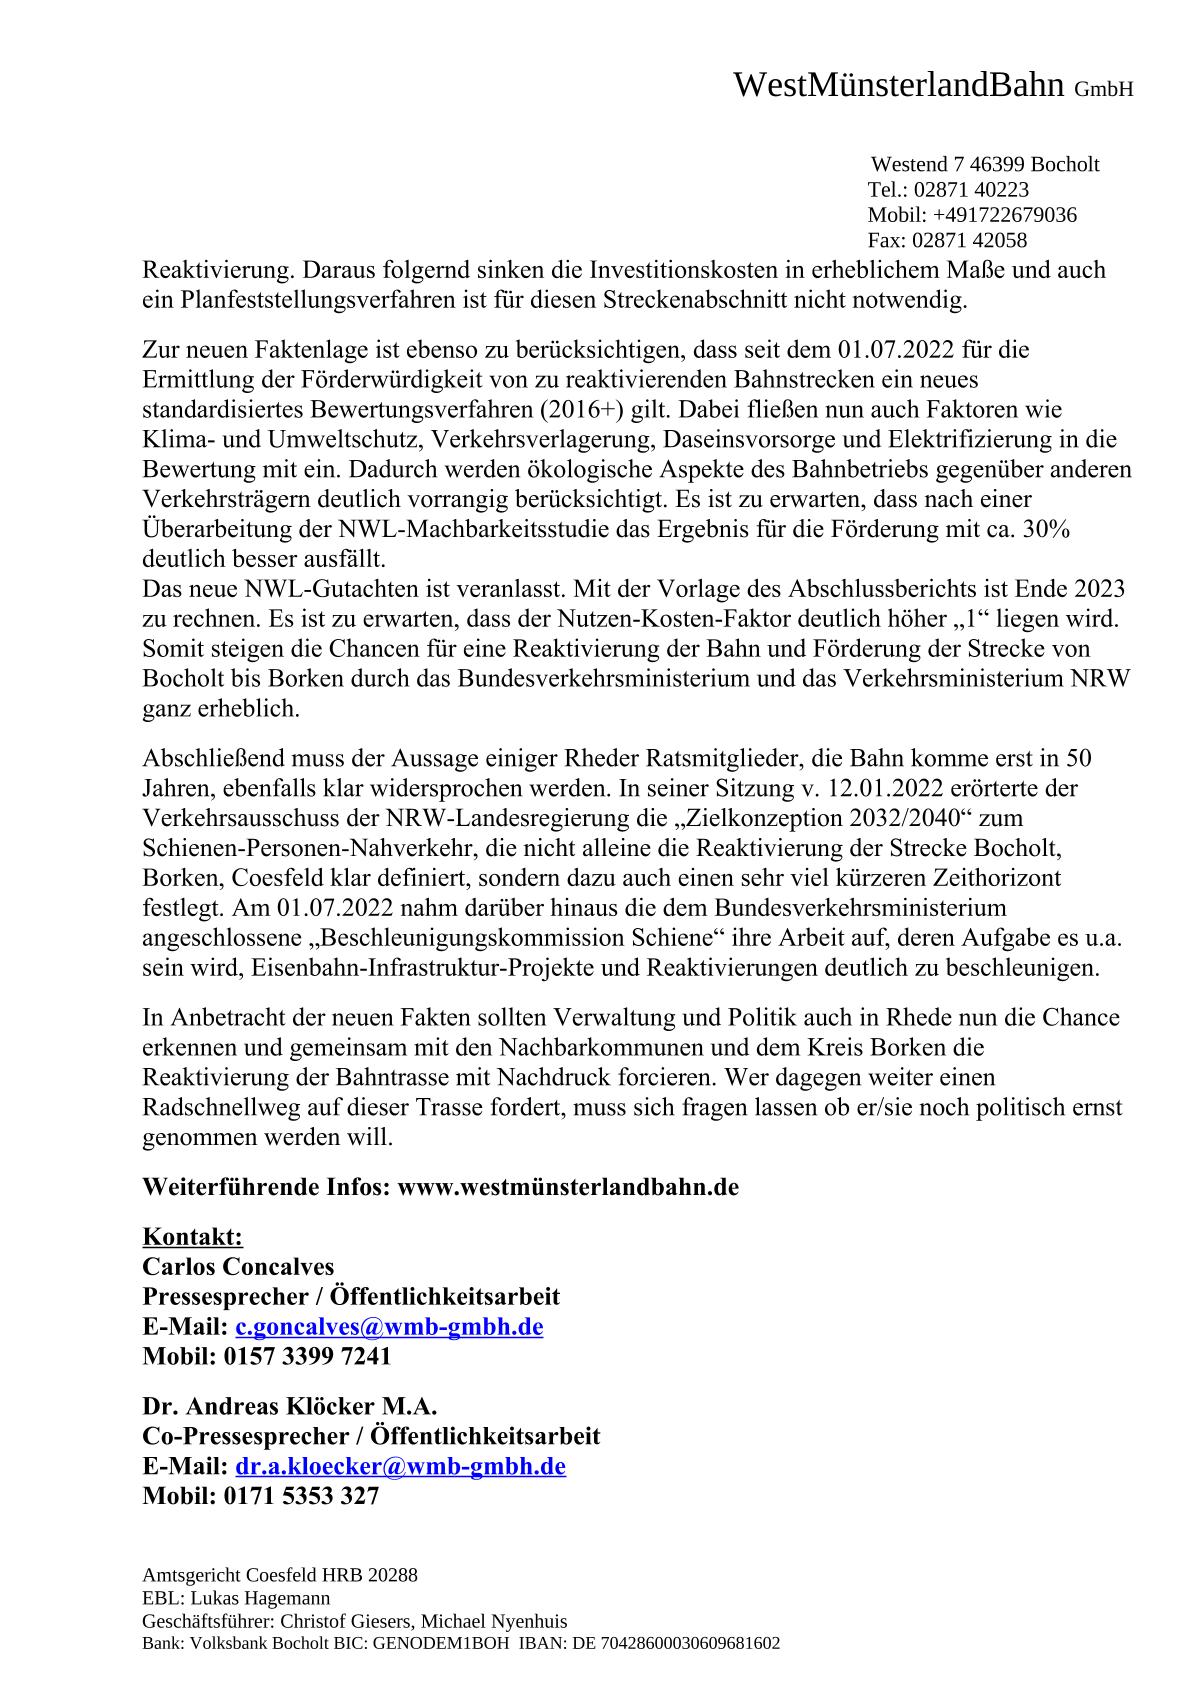 WMB-Pressemitteillung v. 25.10.2022 / Stellungnahme zum BBV-Bericht v. 24.10.22  /  Seite 2